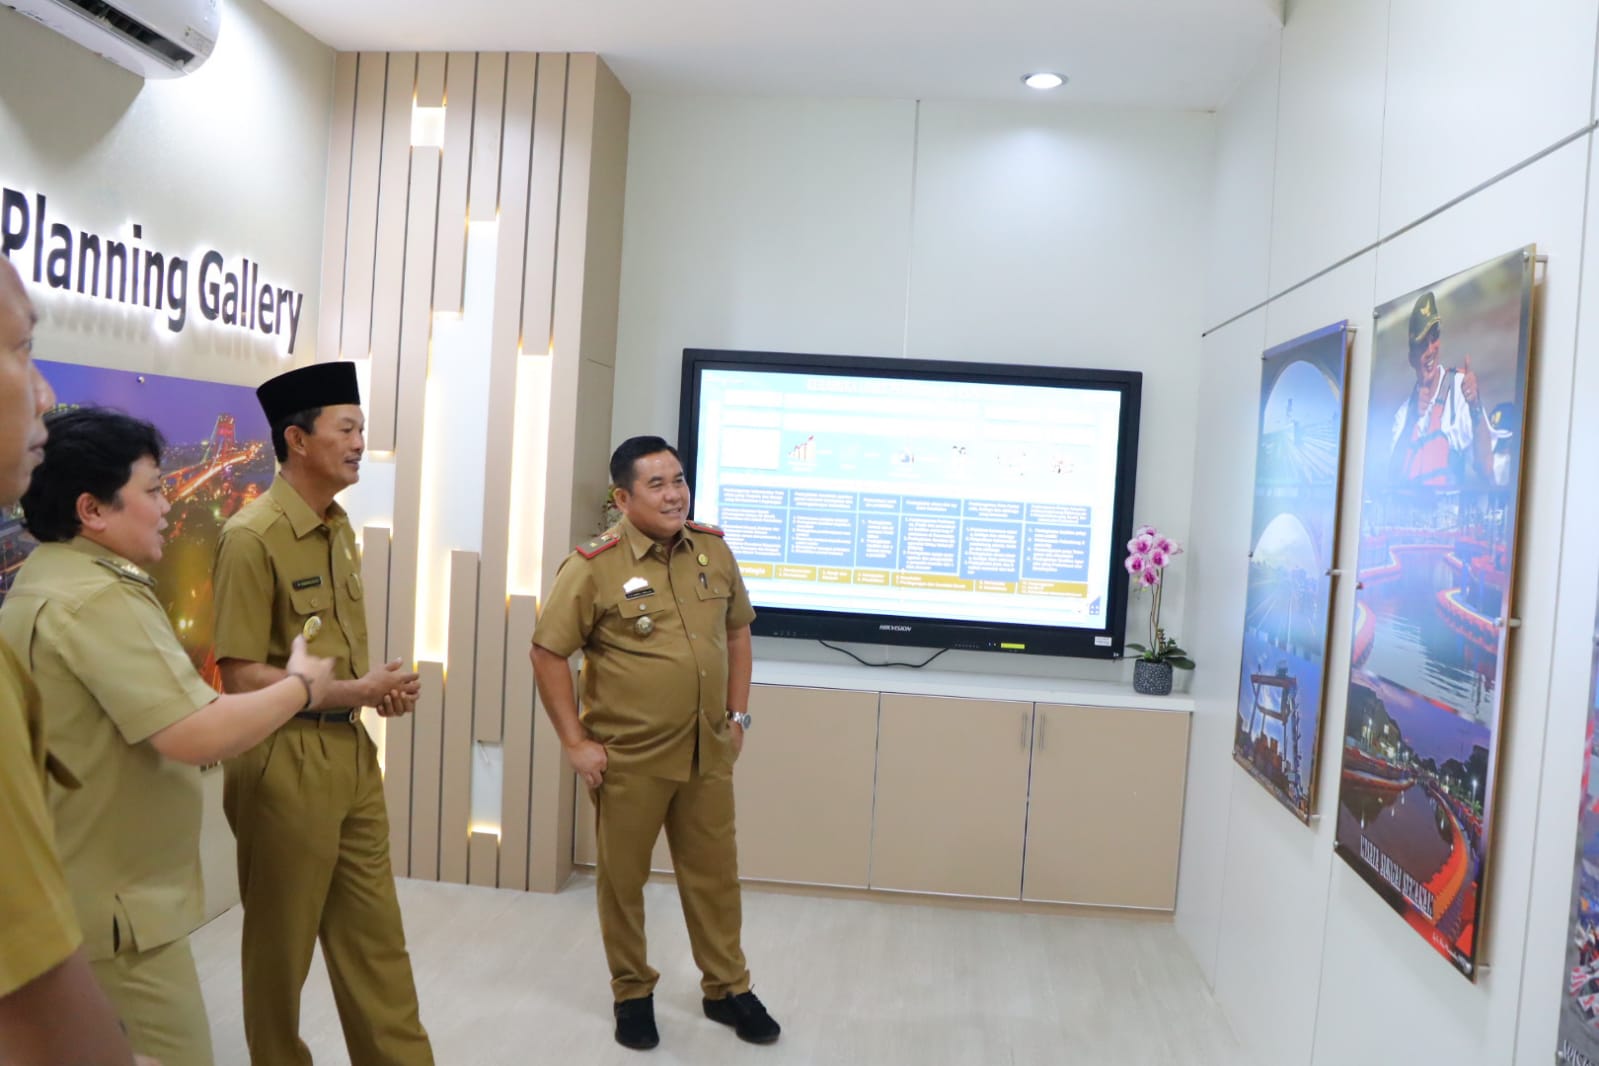 Jelang Jabatan Berakhir, Walikota Palembang Silaturahmi ke OPD, Ini Kantor Pertama Dikunjungi